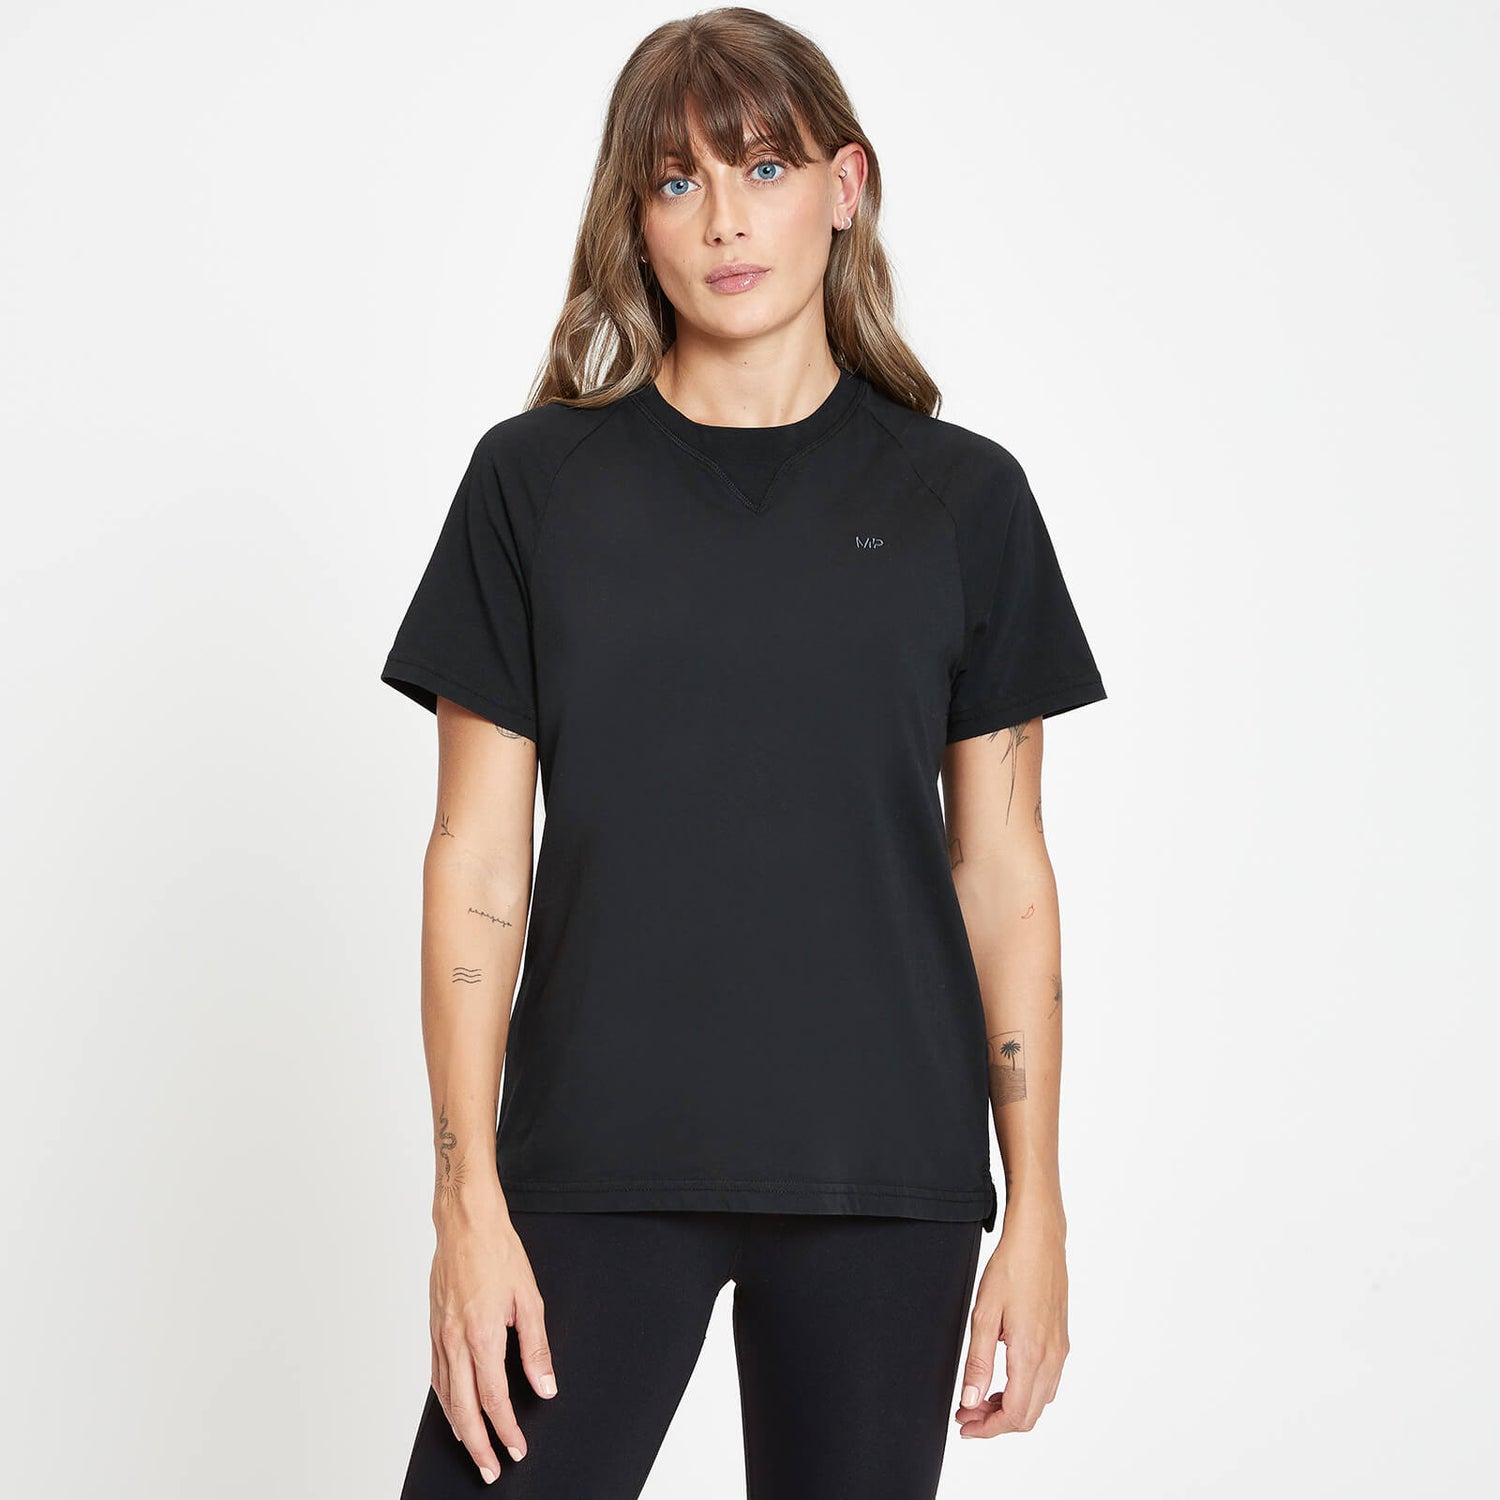  Удлиненная женская футболка MP для выходных, черная - XXS